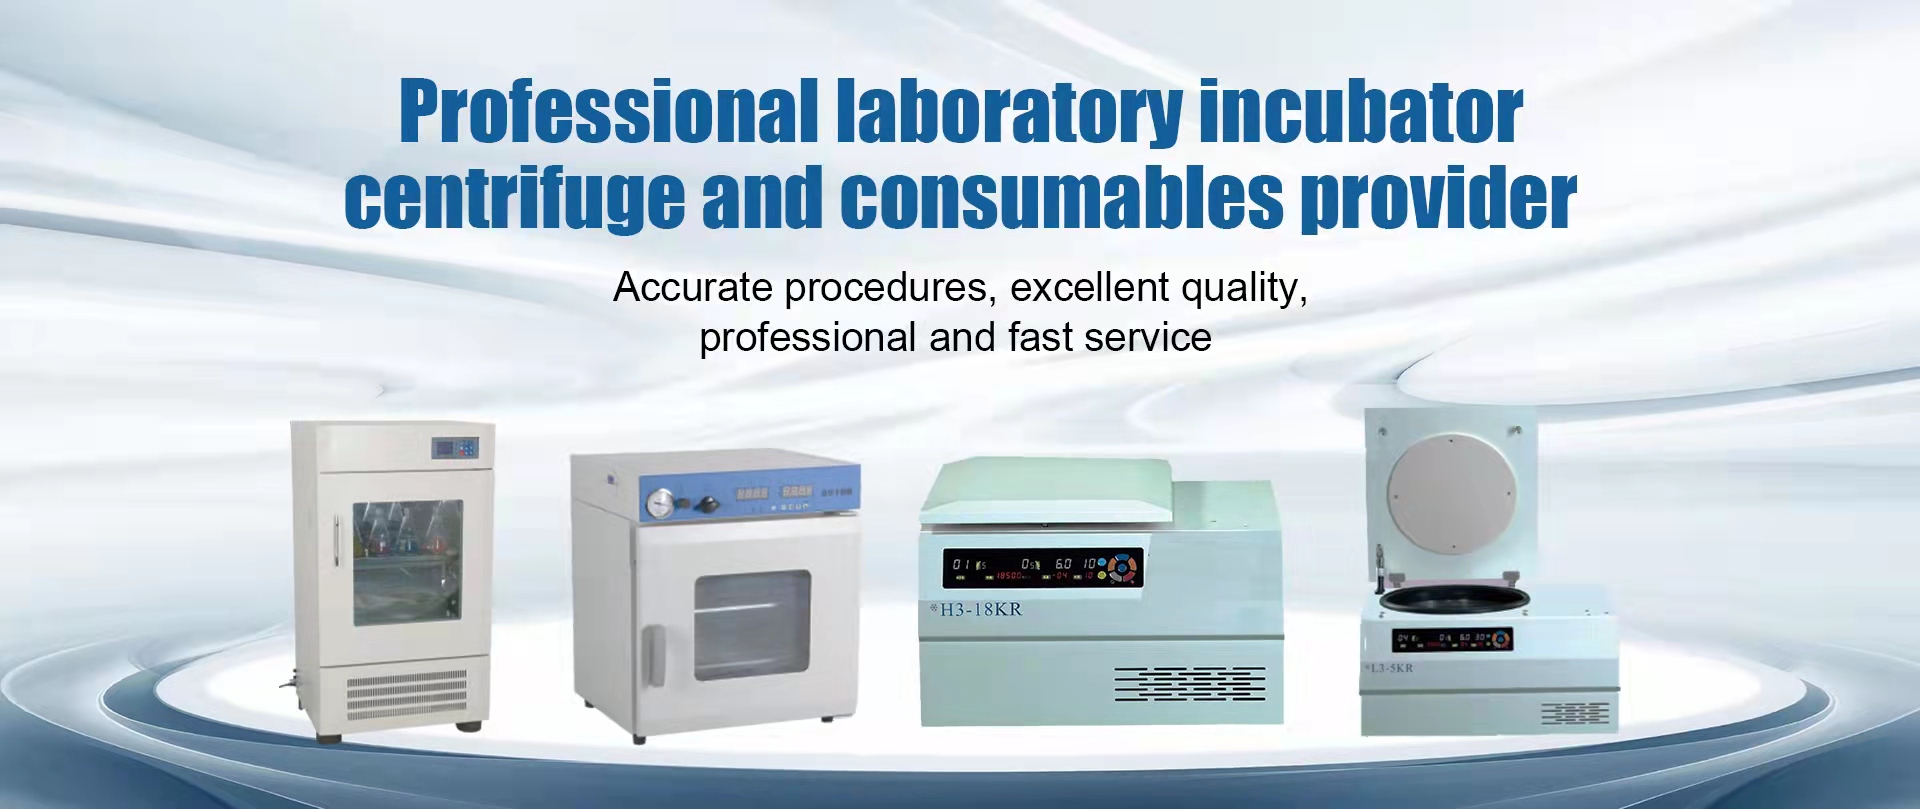 Fornitore professionale di incubatori di laboratorio, centrifughe e materiali di consumo